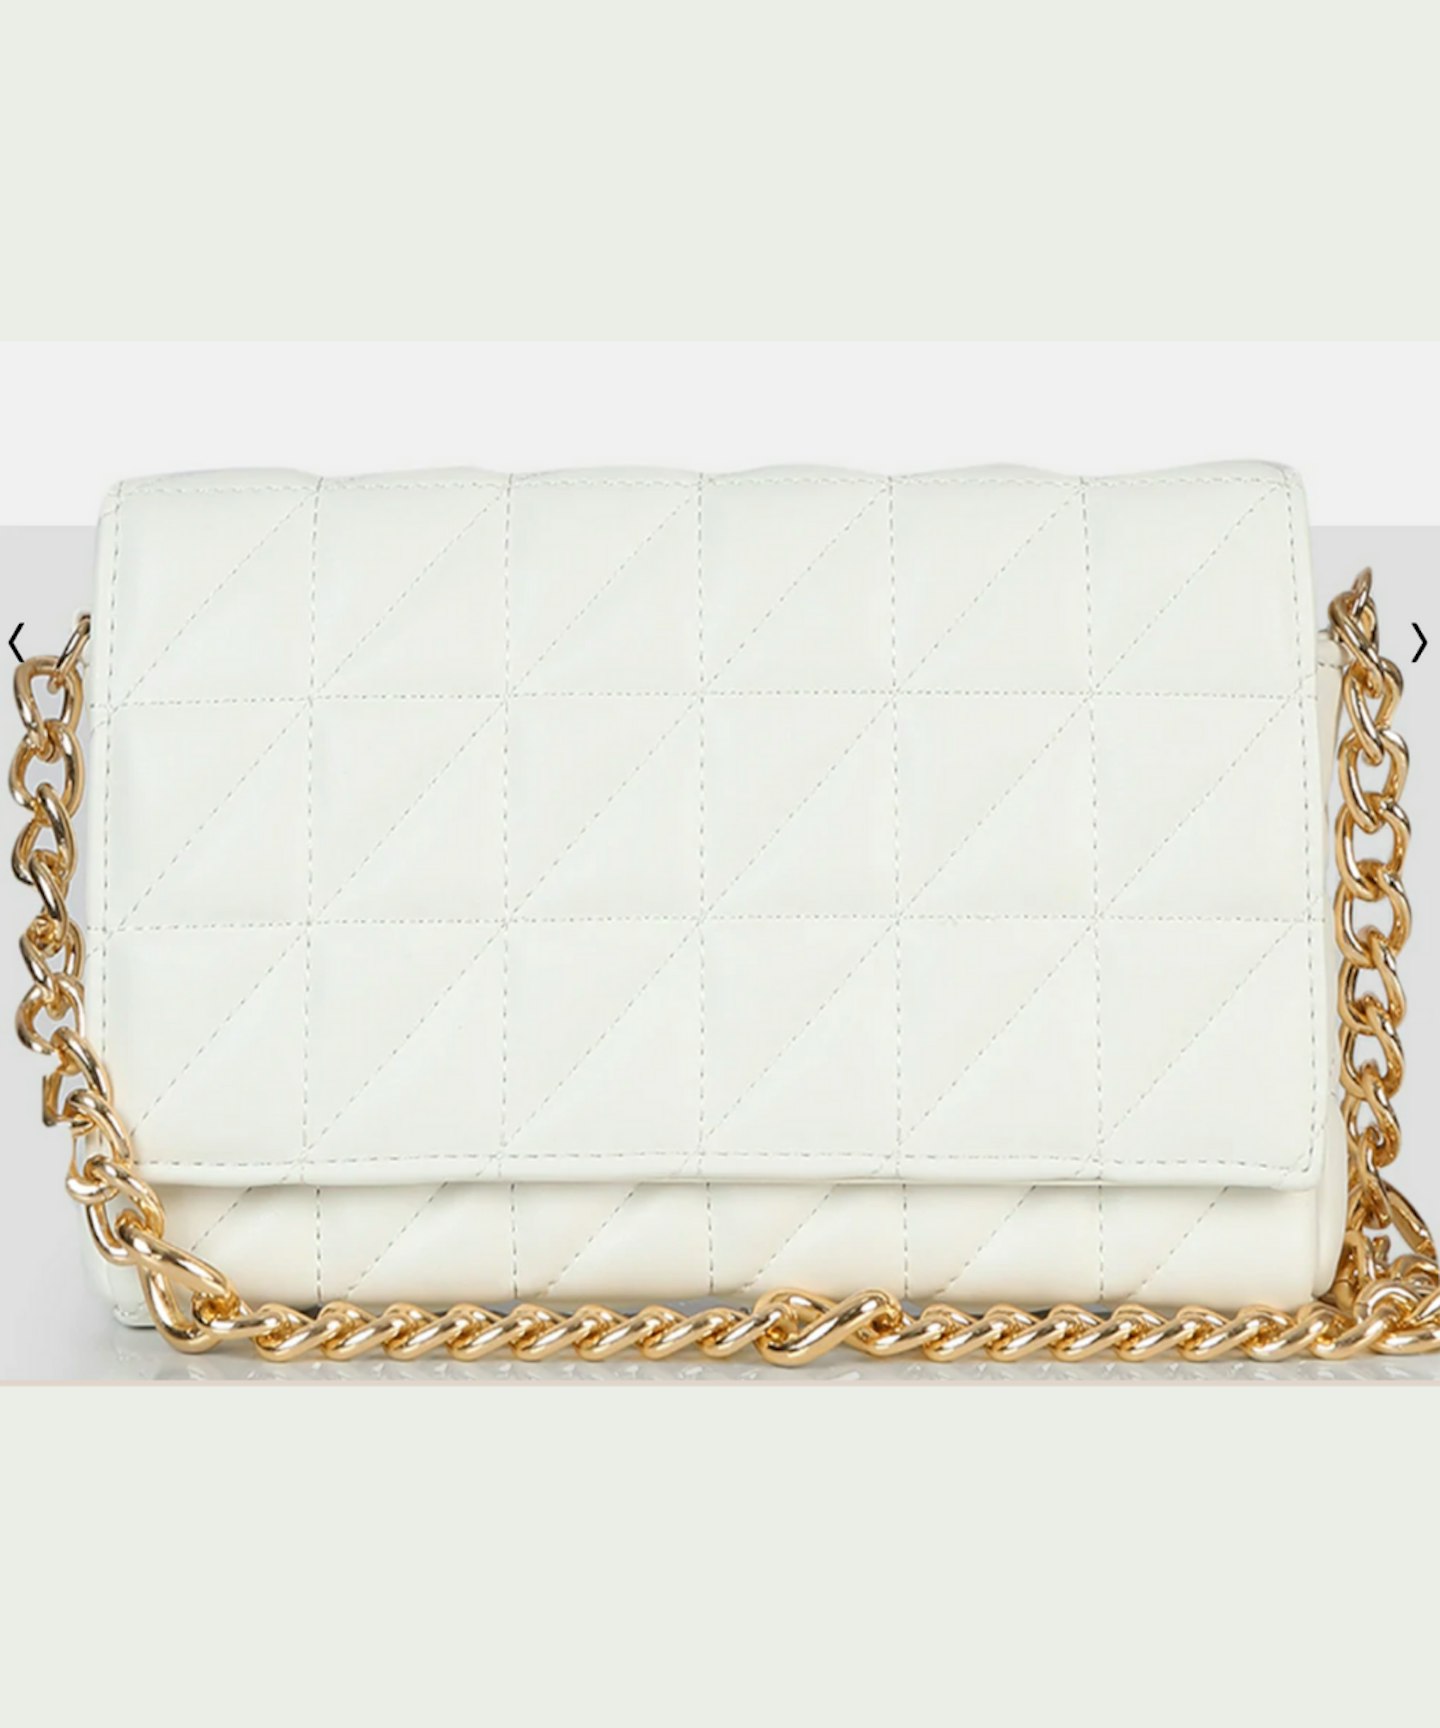 The Kahlo White Gold Chain Shoulder Mini Bag